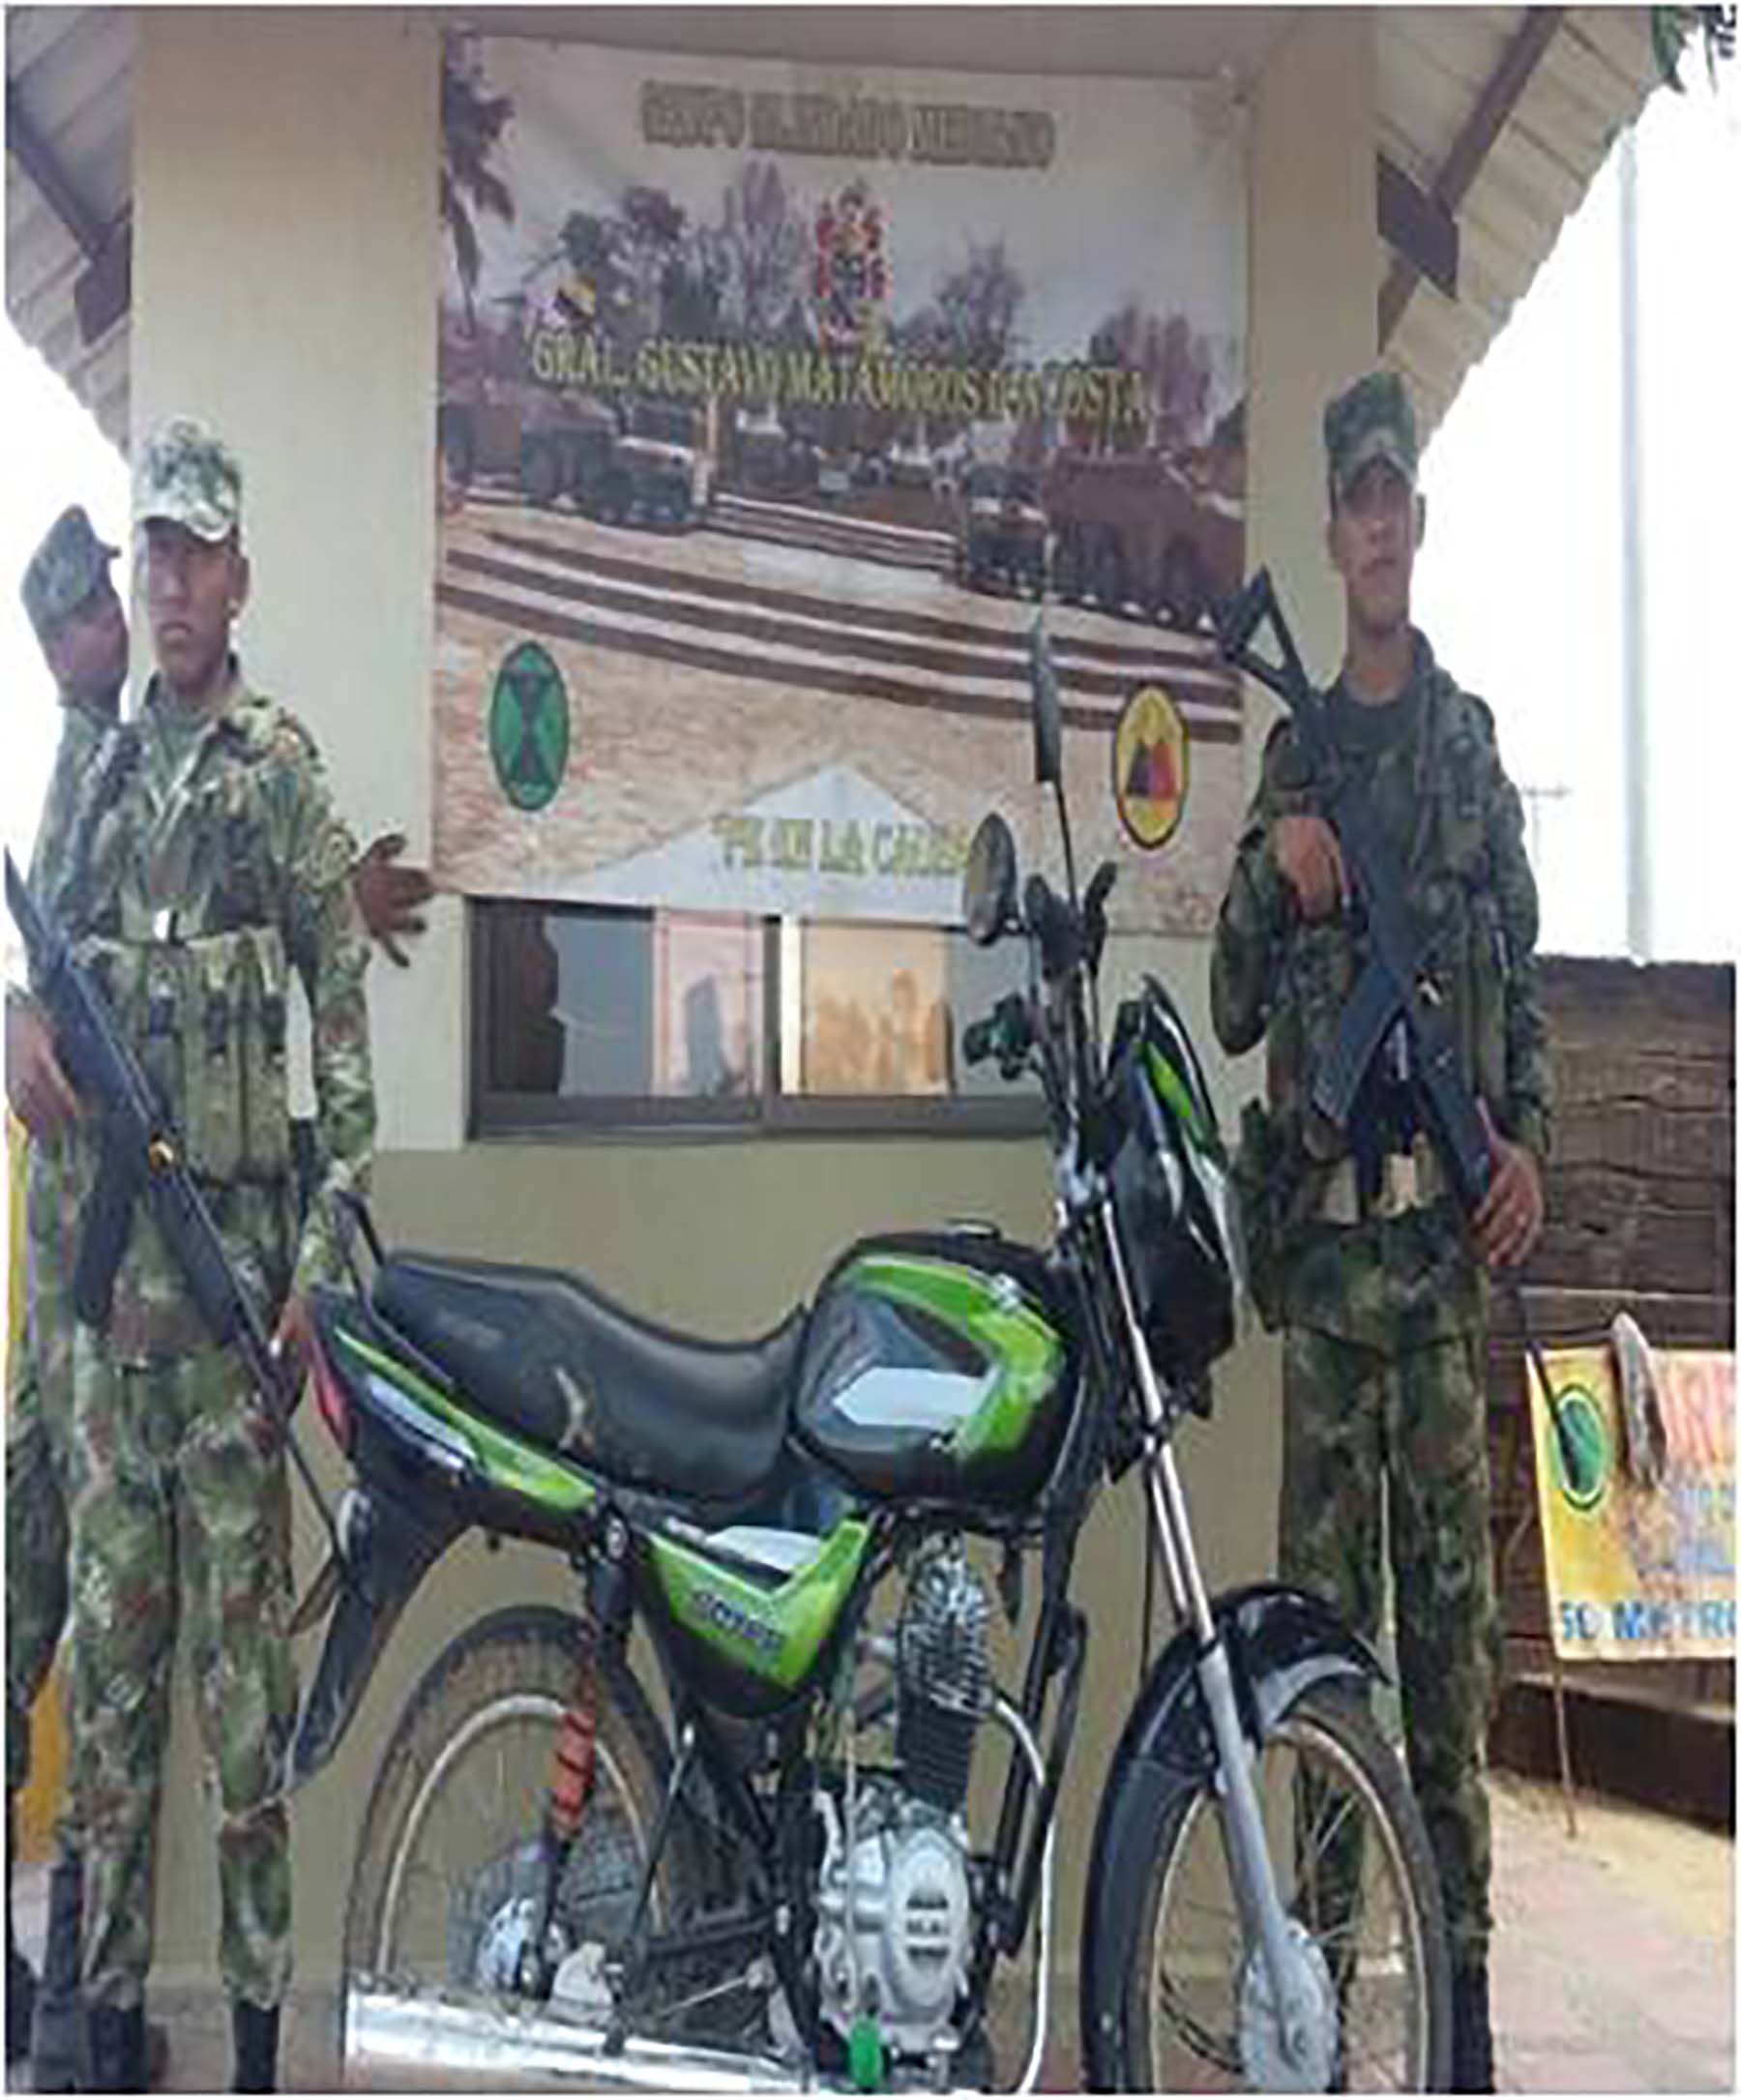 La motocicleta recuperada por tropas del Ejército nacional.